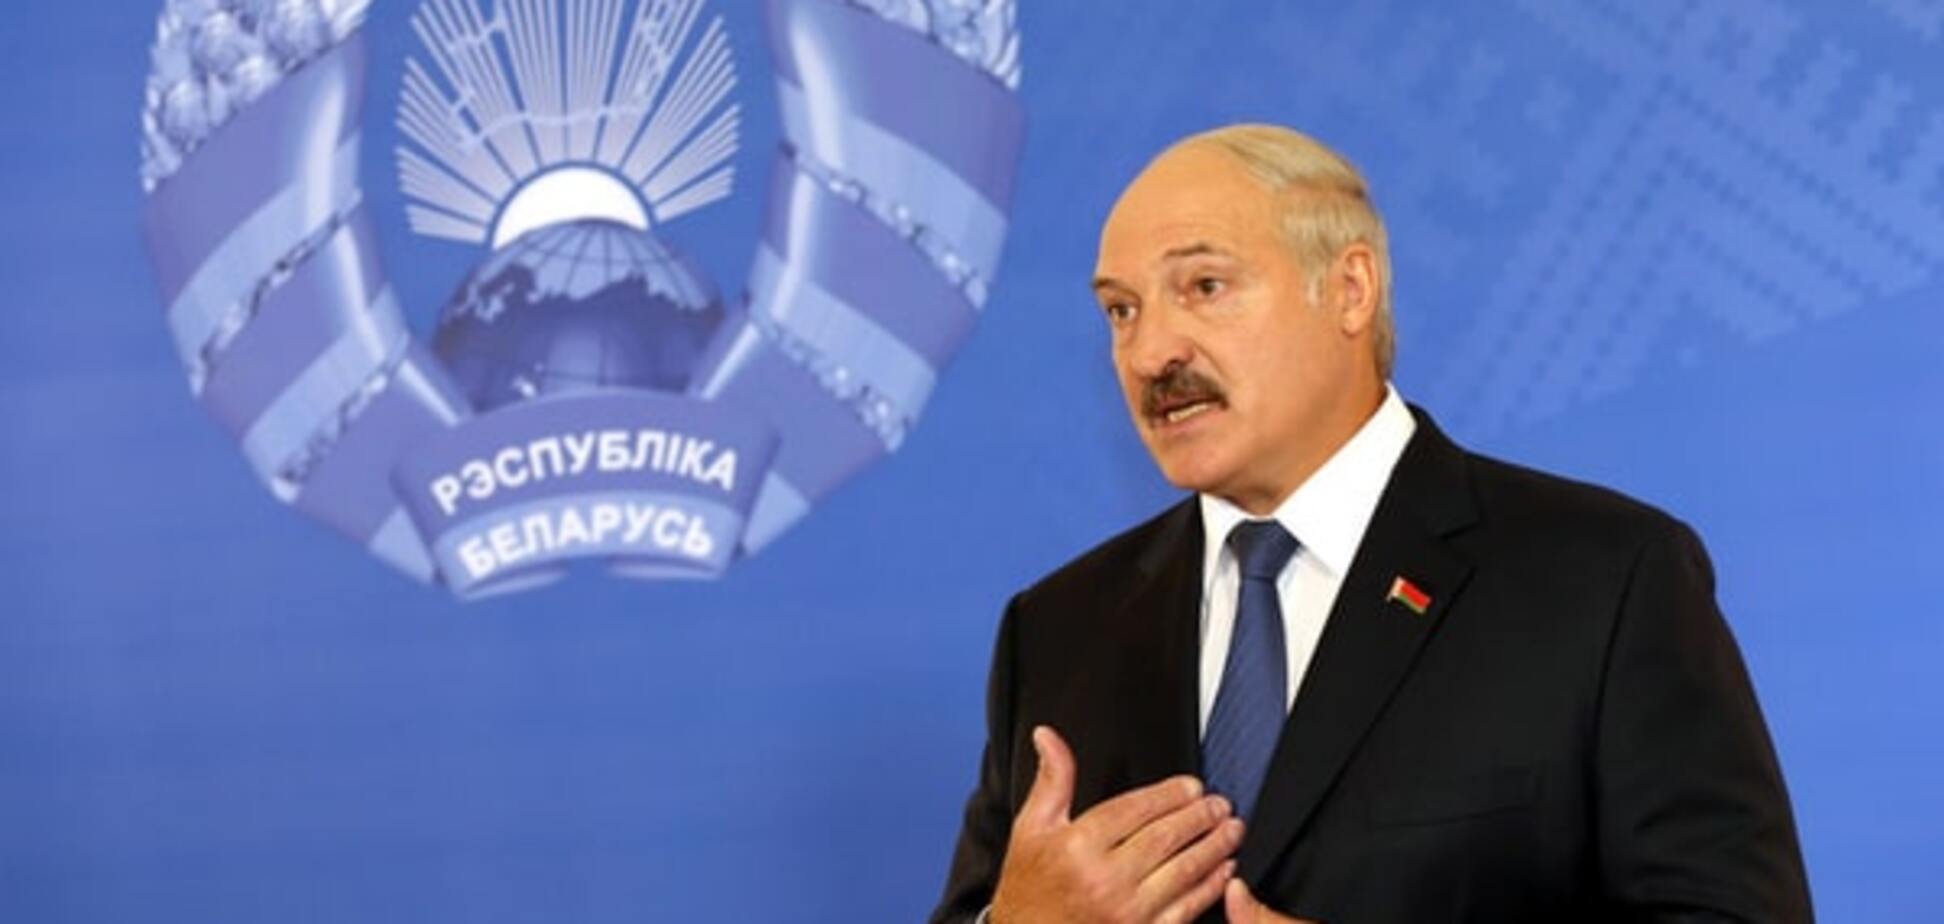 Екзит-поли віддали перемогу на виборах у Білорусі Лукашенку